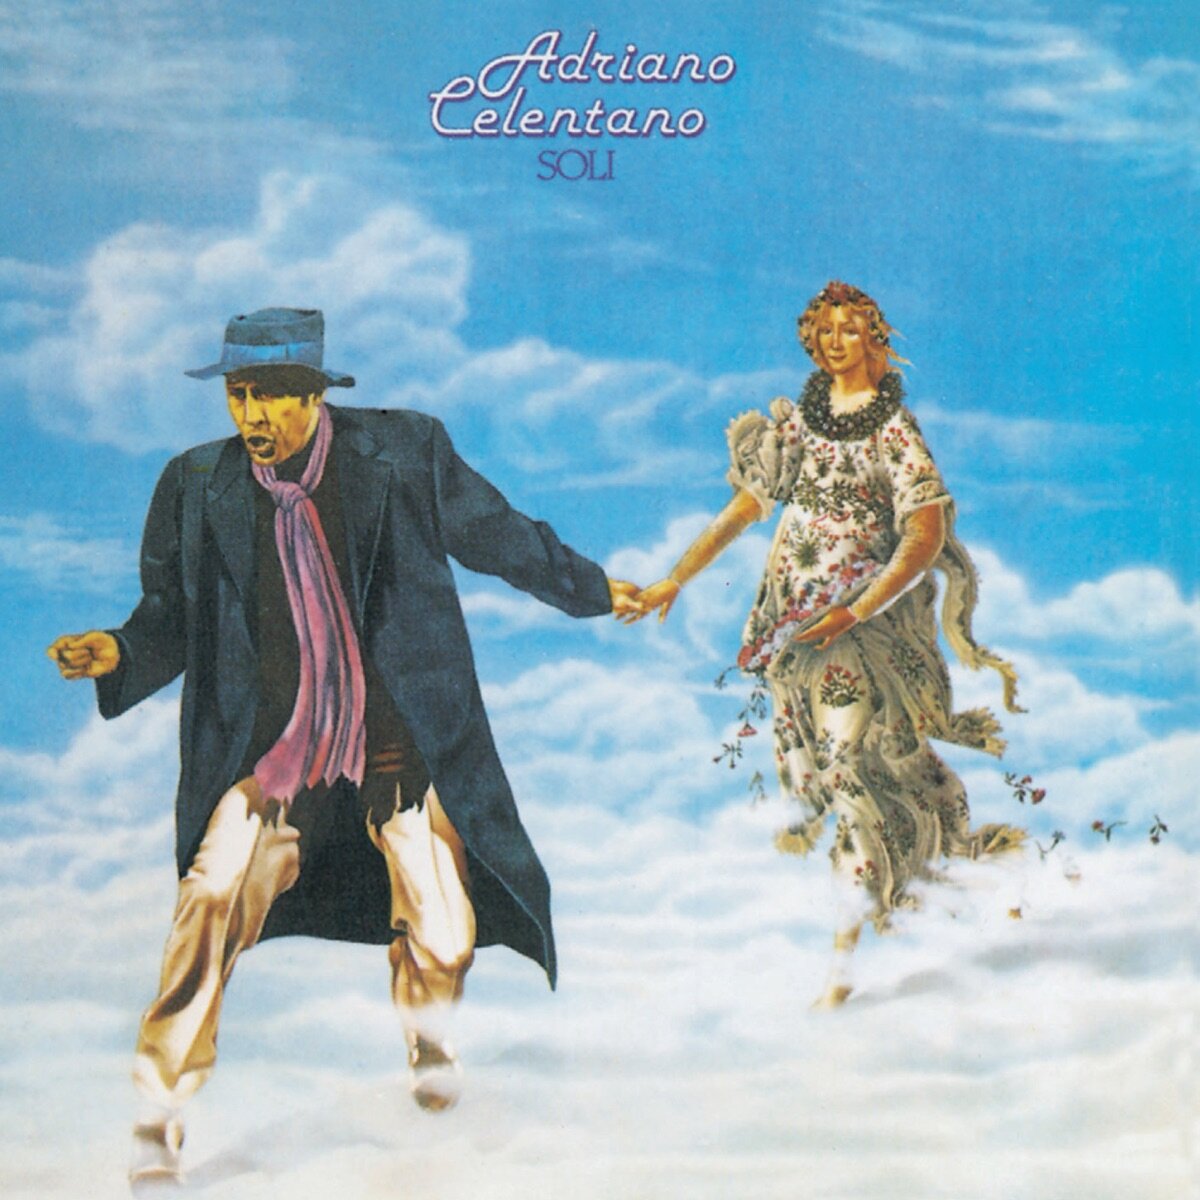 Adriano Celentano-Soli (1979) < 2012 Universal CD EC (Компакт-диск 1шт)